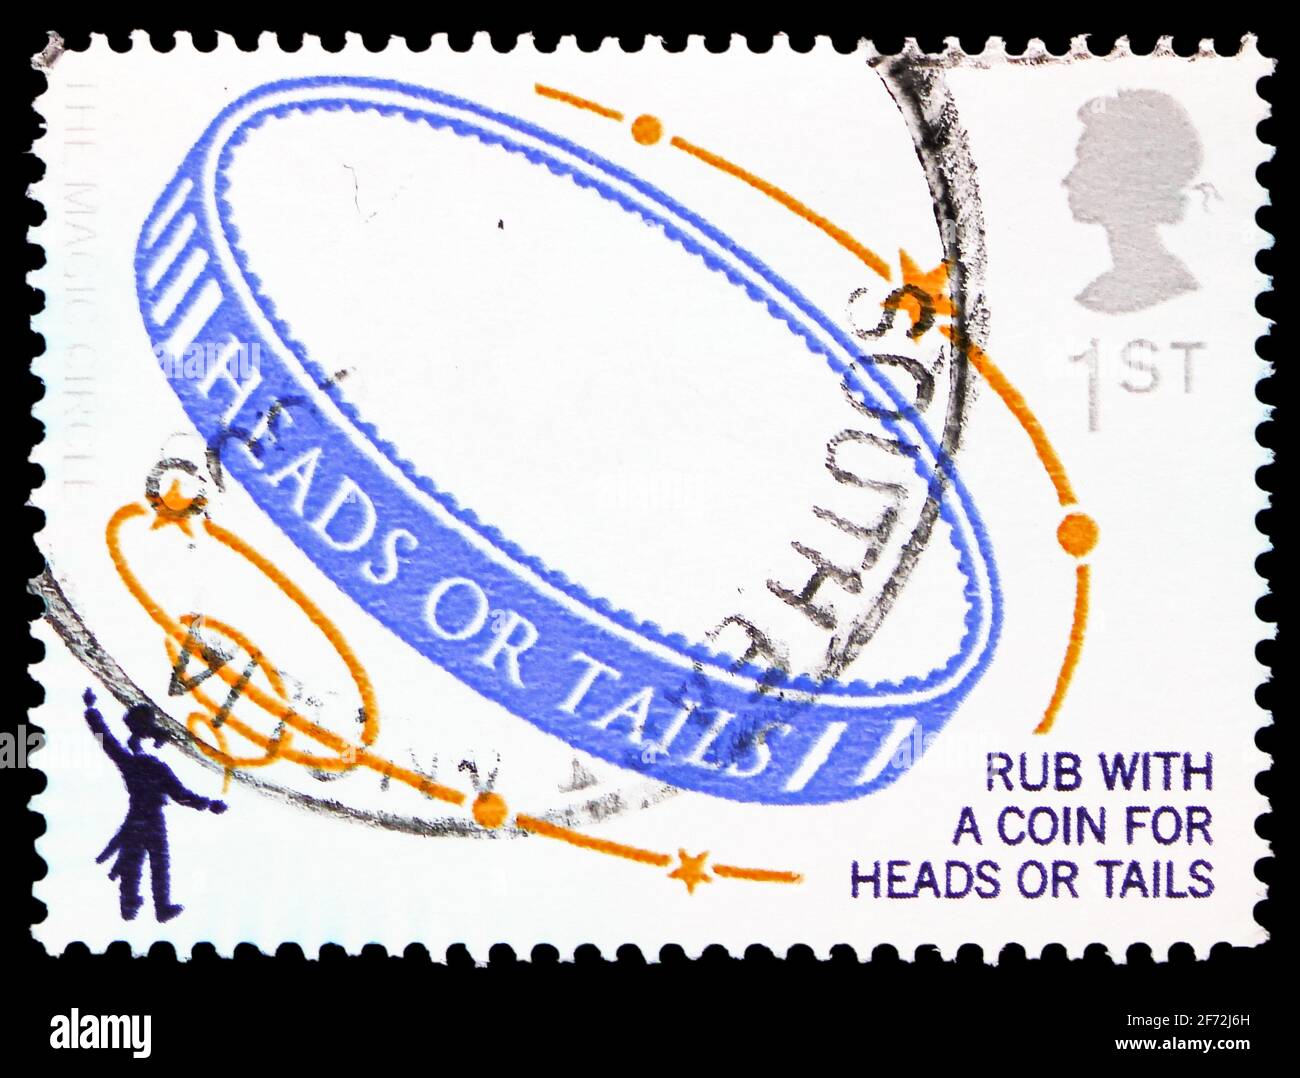 MOSCOU, RUSSIE - 22 DÉCEMBRE 2020 : le timbre-poste imprimé au Royaume-Uni montre la pièce de monnaie (têtes), Centenaire de la série Magic Circle, vers 2005 Banque D'Images